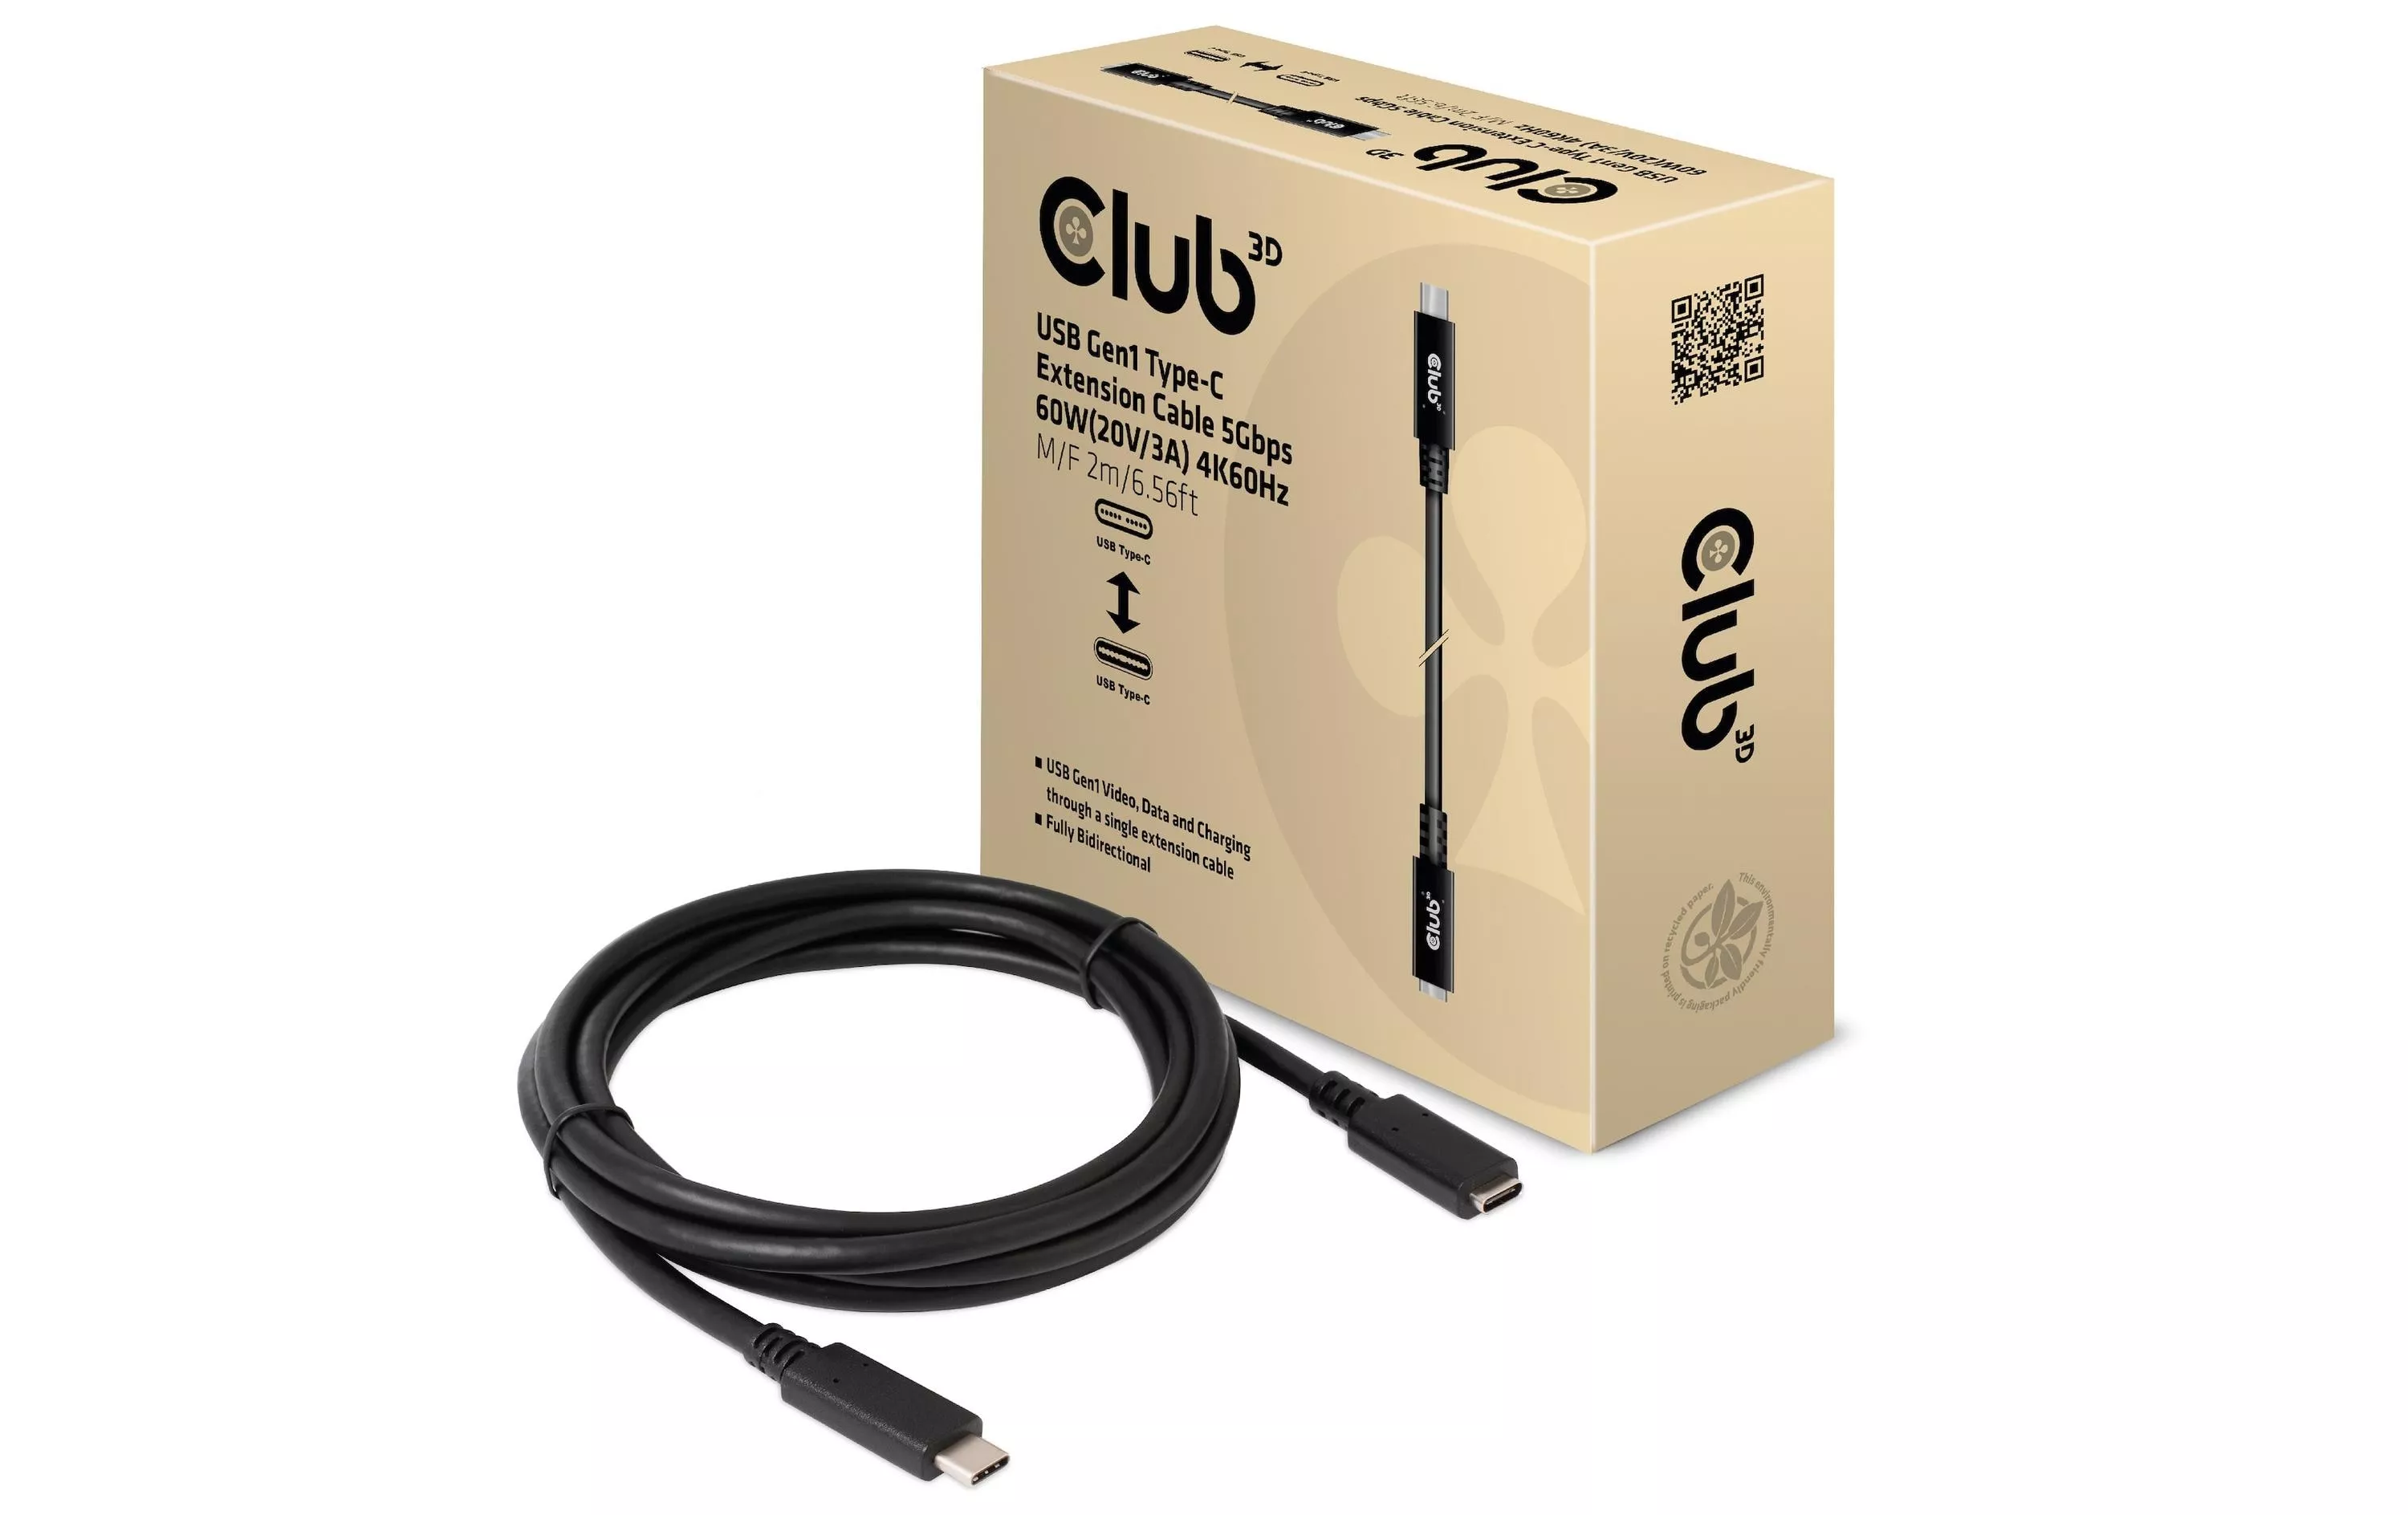 Cavo di prolunga Club 3D USB 3.0 CAC-1529 USB C - USB C 2 m